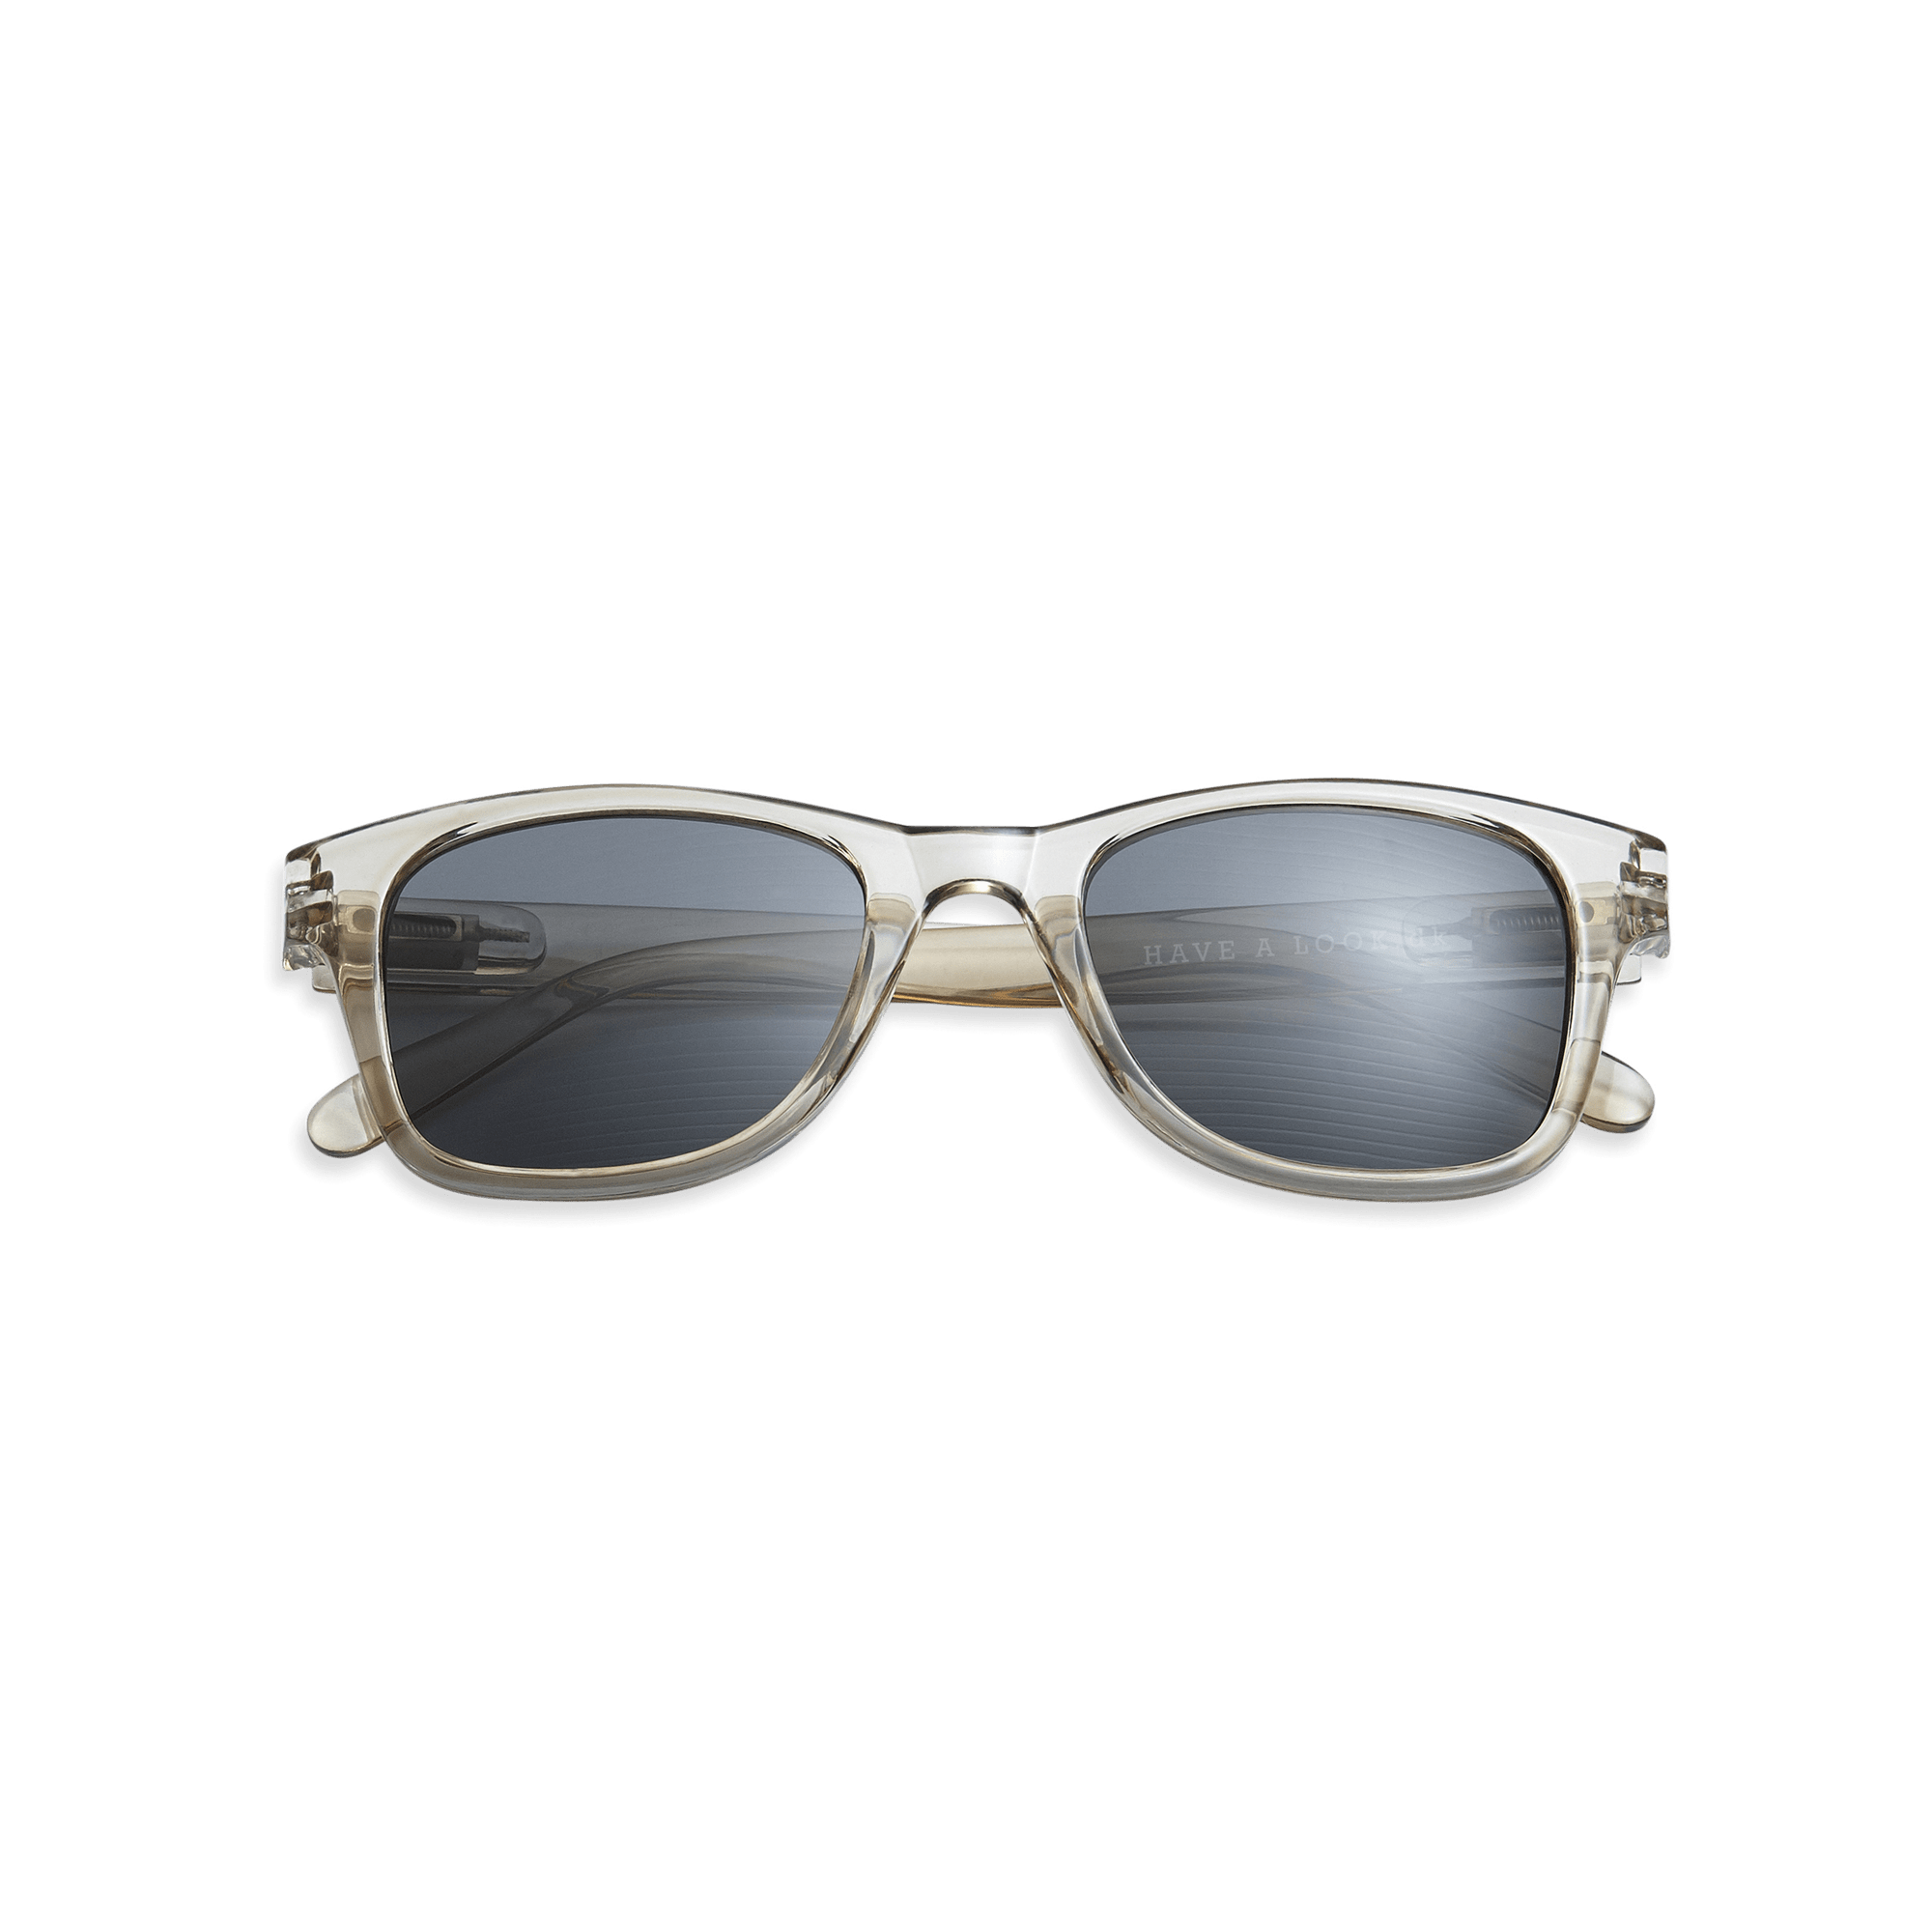 Minus-solglasögon Type B - olive